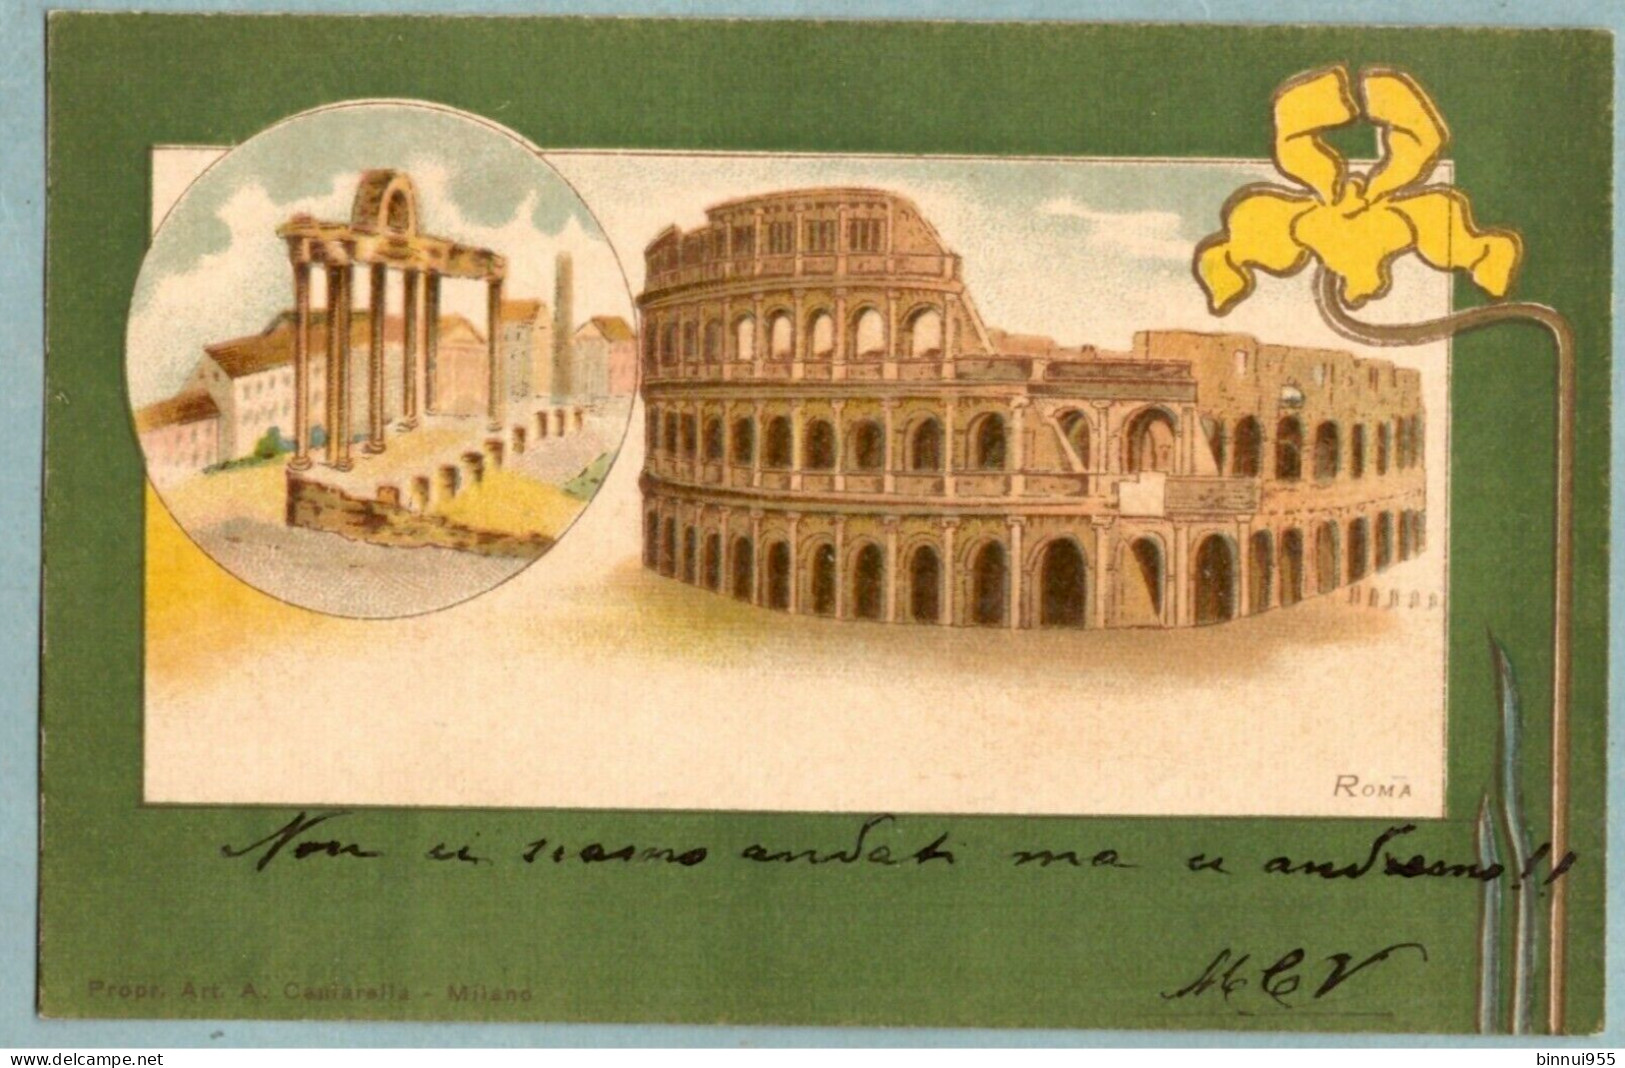 Cartolina D'epoca Illustrata Roma Il Colosseo - Viaggiata - Colosseum